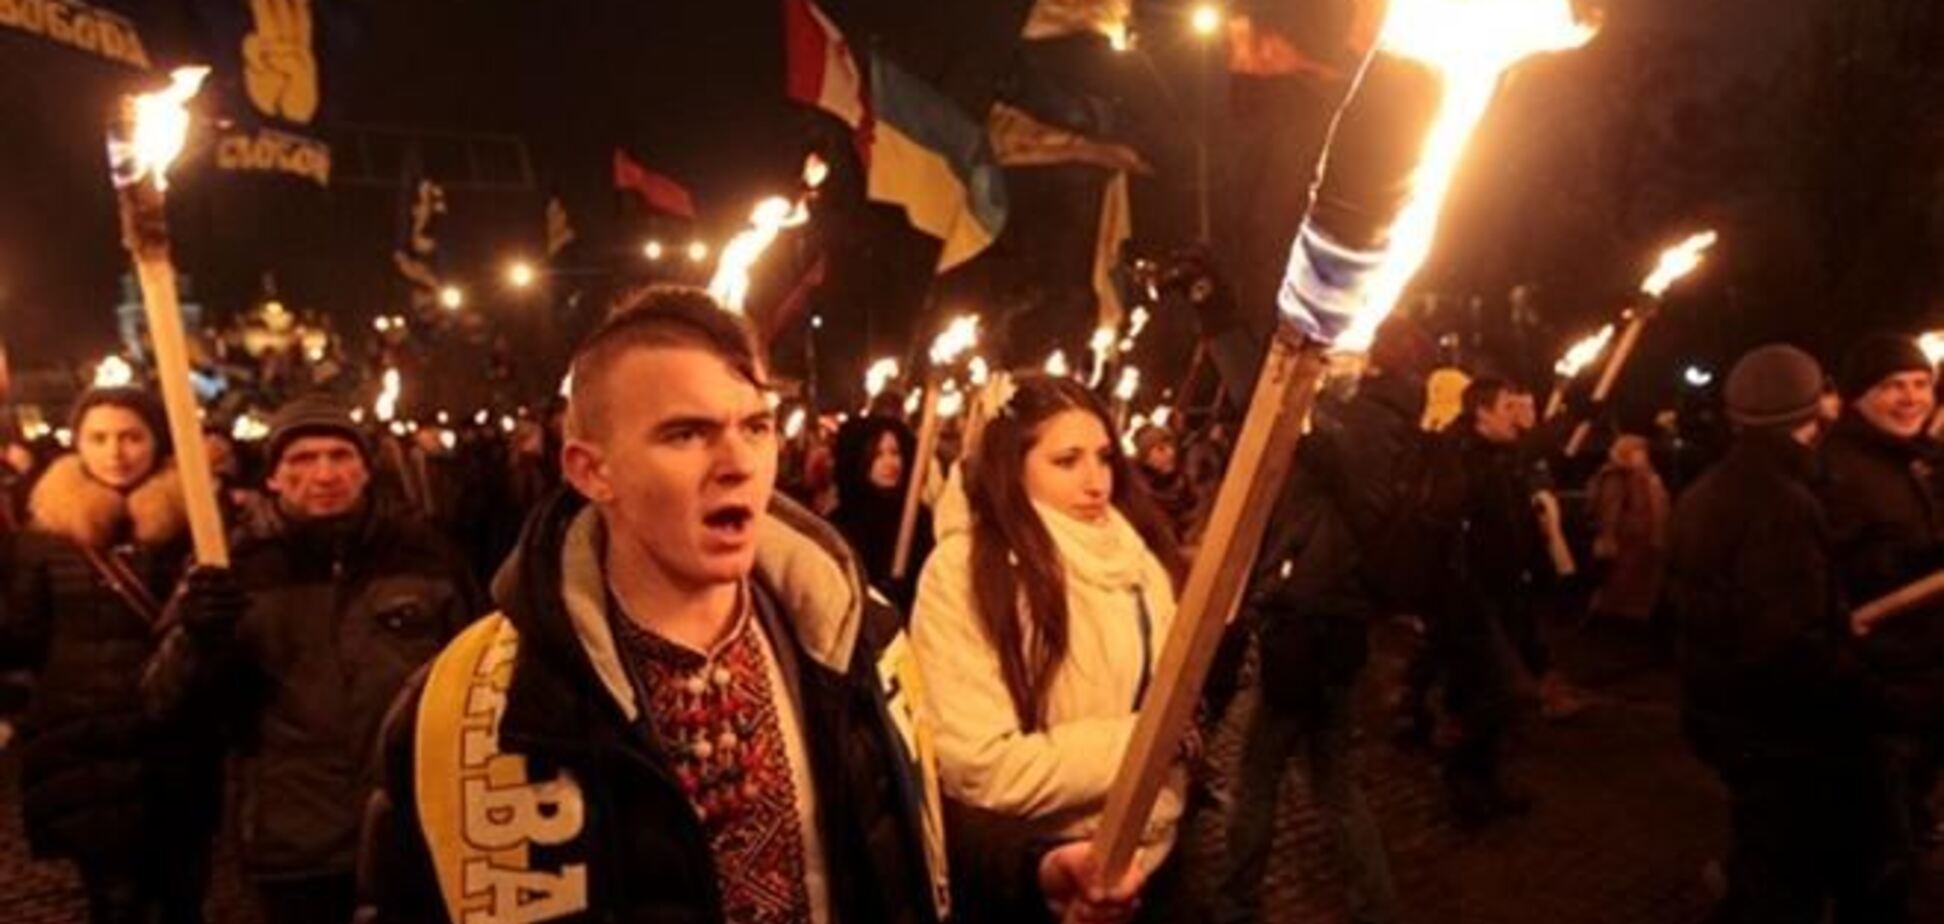 Колесніченко: на Евромайдане впроваджуються неонацистські ідеї